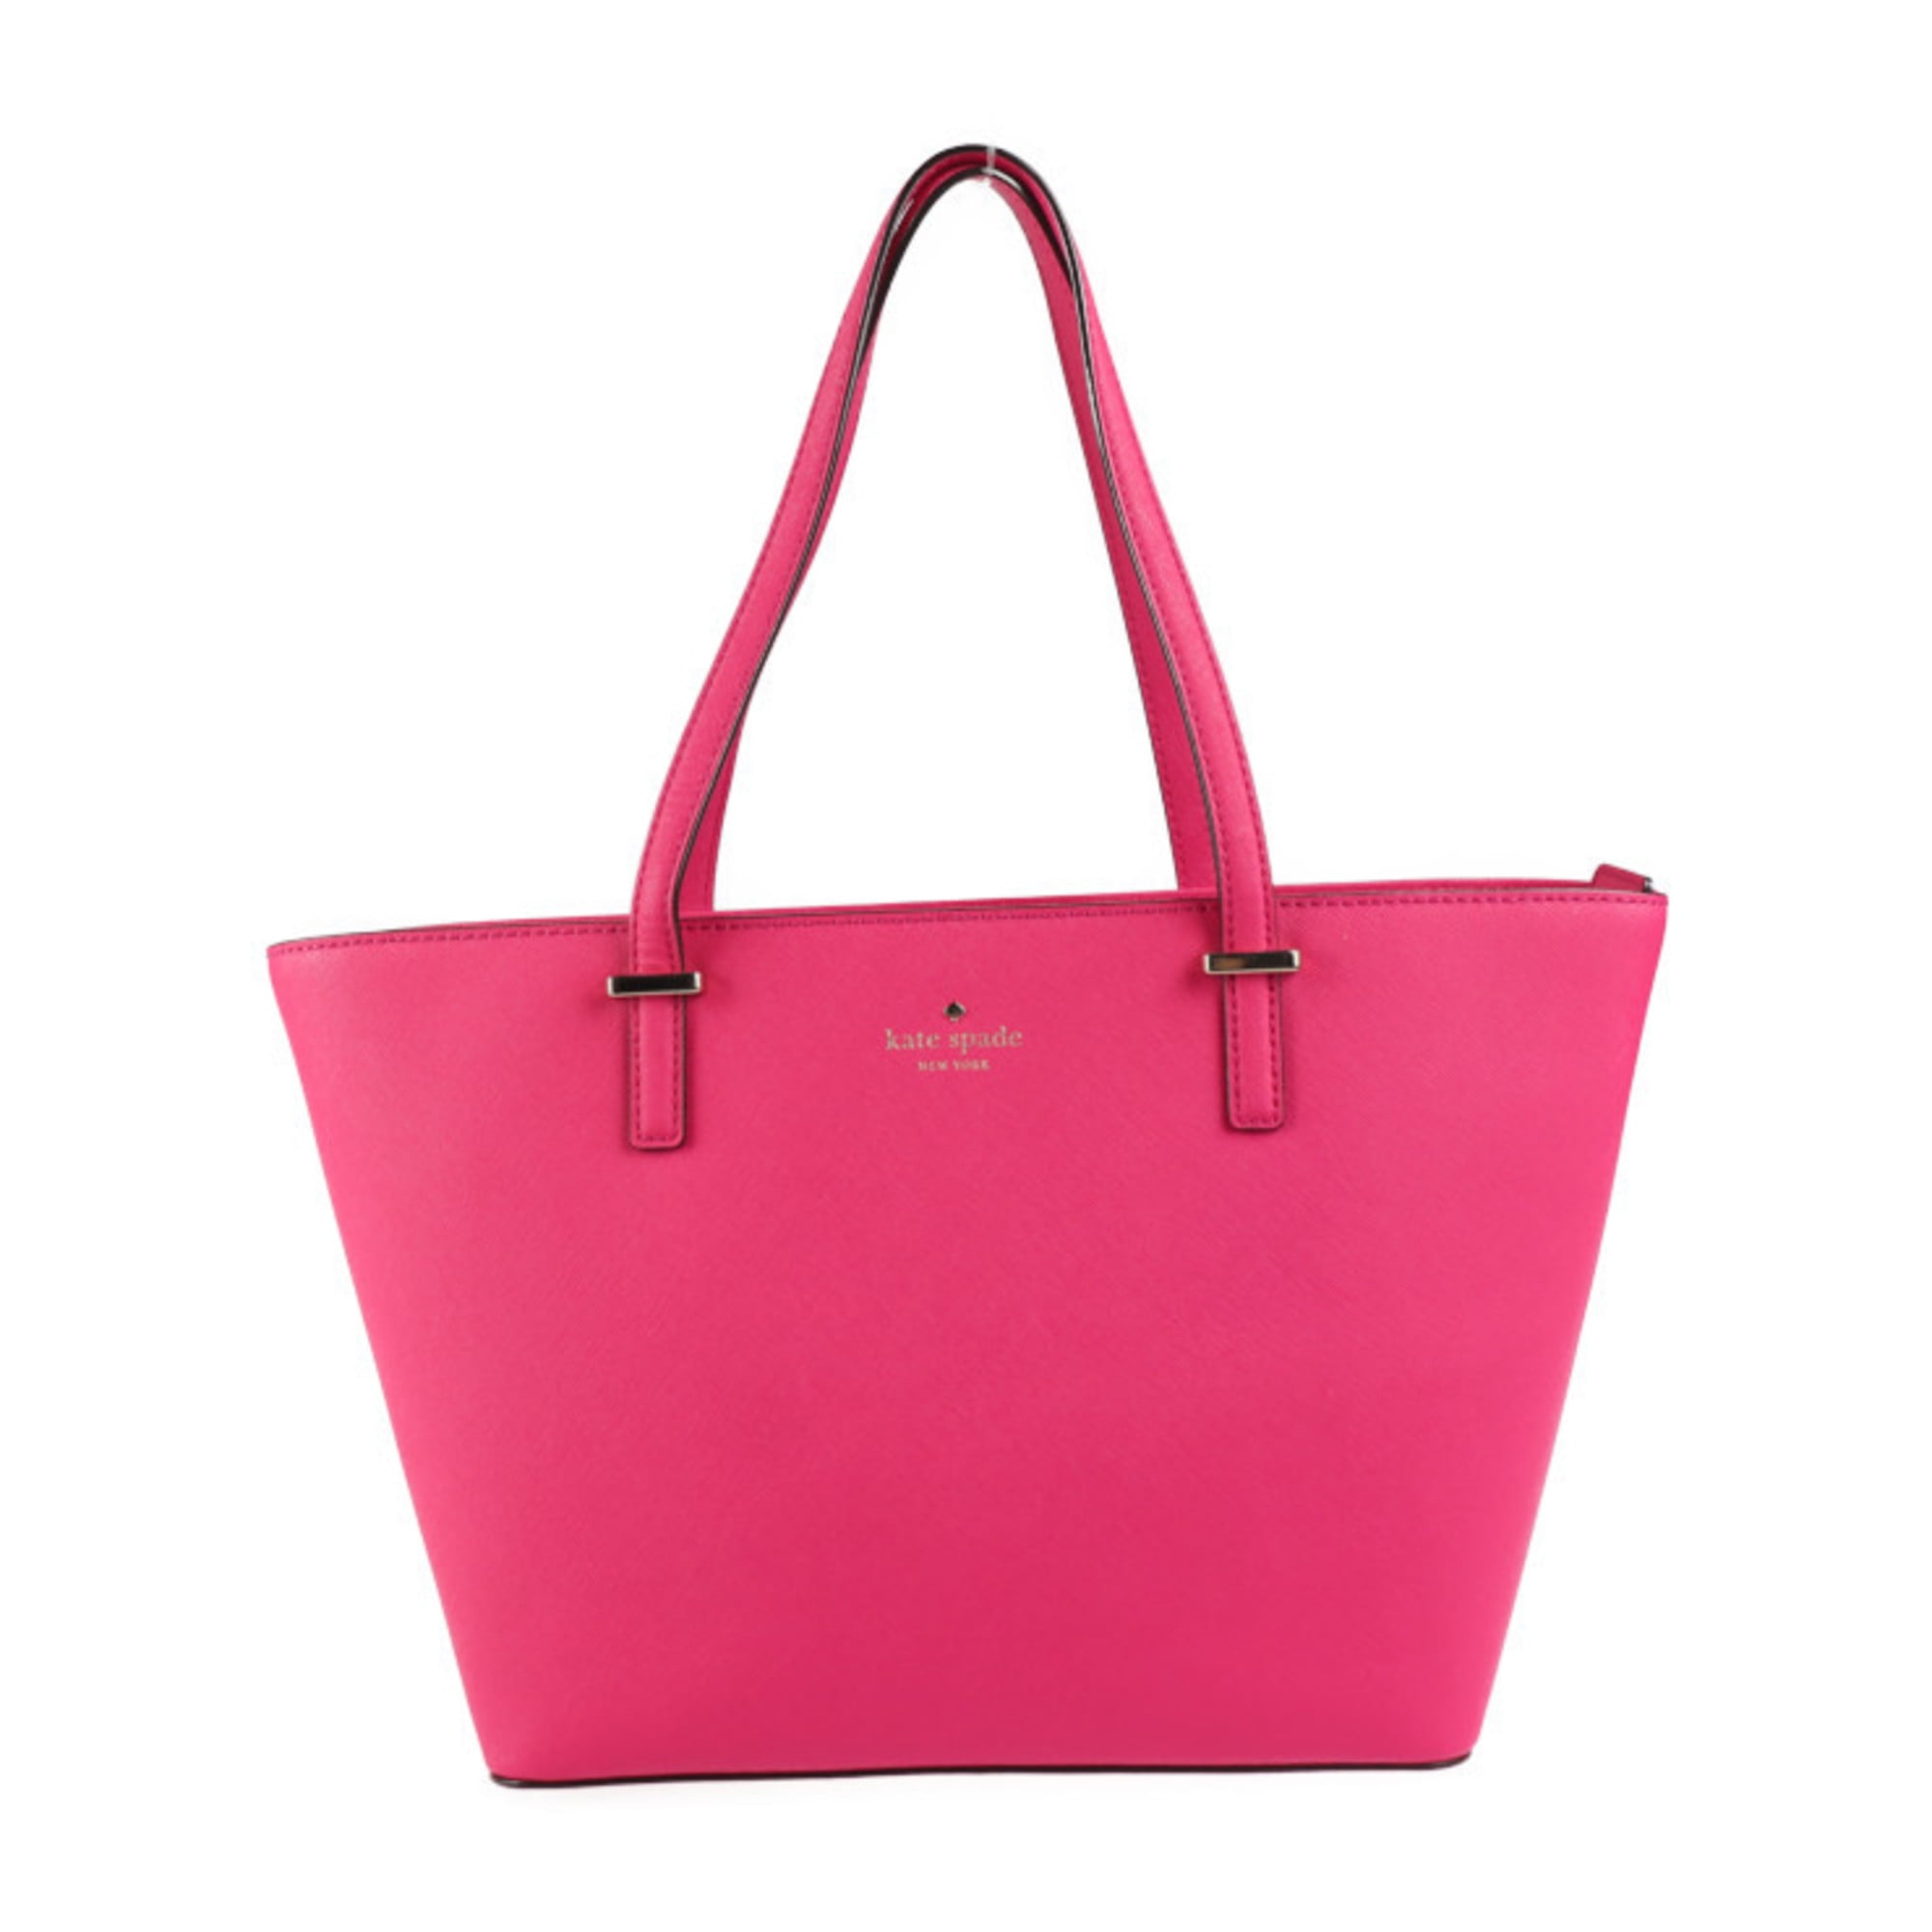 Kate Spade Small Hot Pink Purse/Handbag. Polka Dot Interior. Handles.